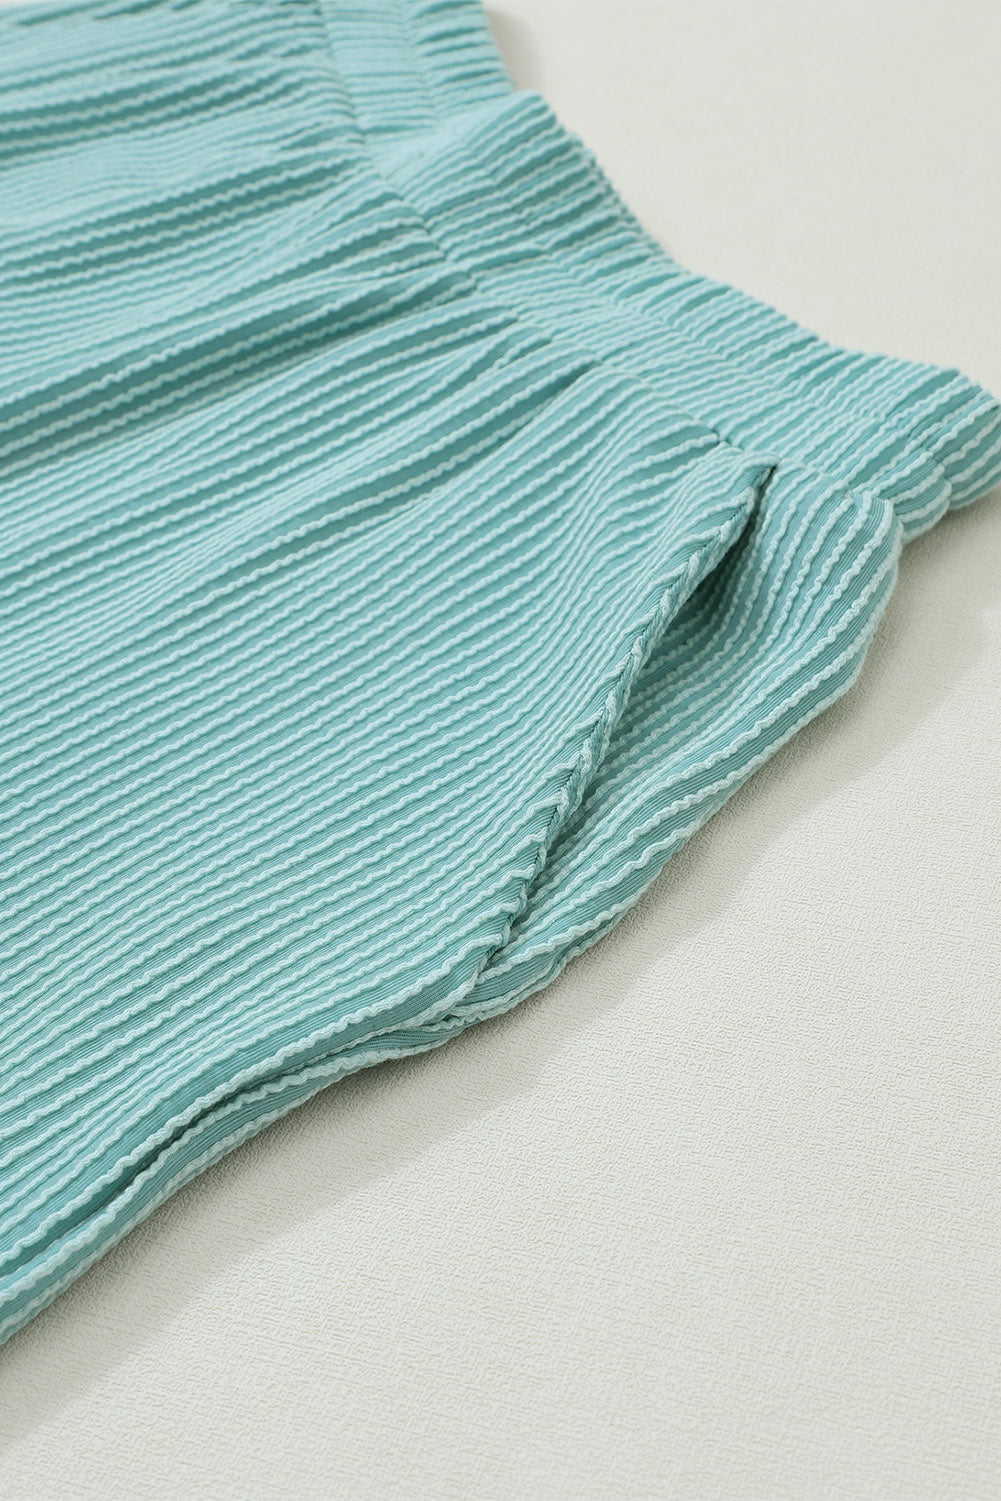 Nebelblaues Cord-Shorts-Set mit V-Ausschnitt, lockerem Oberteil und Taschen